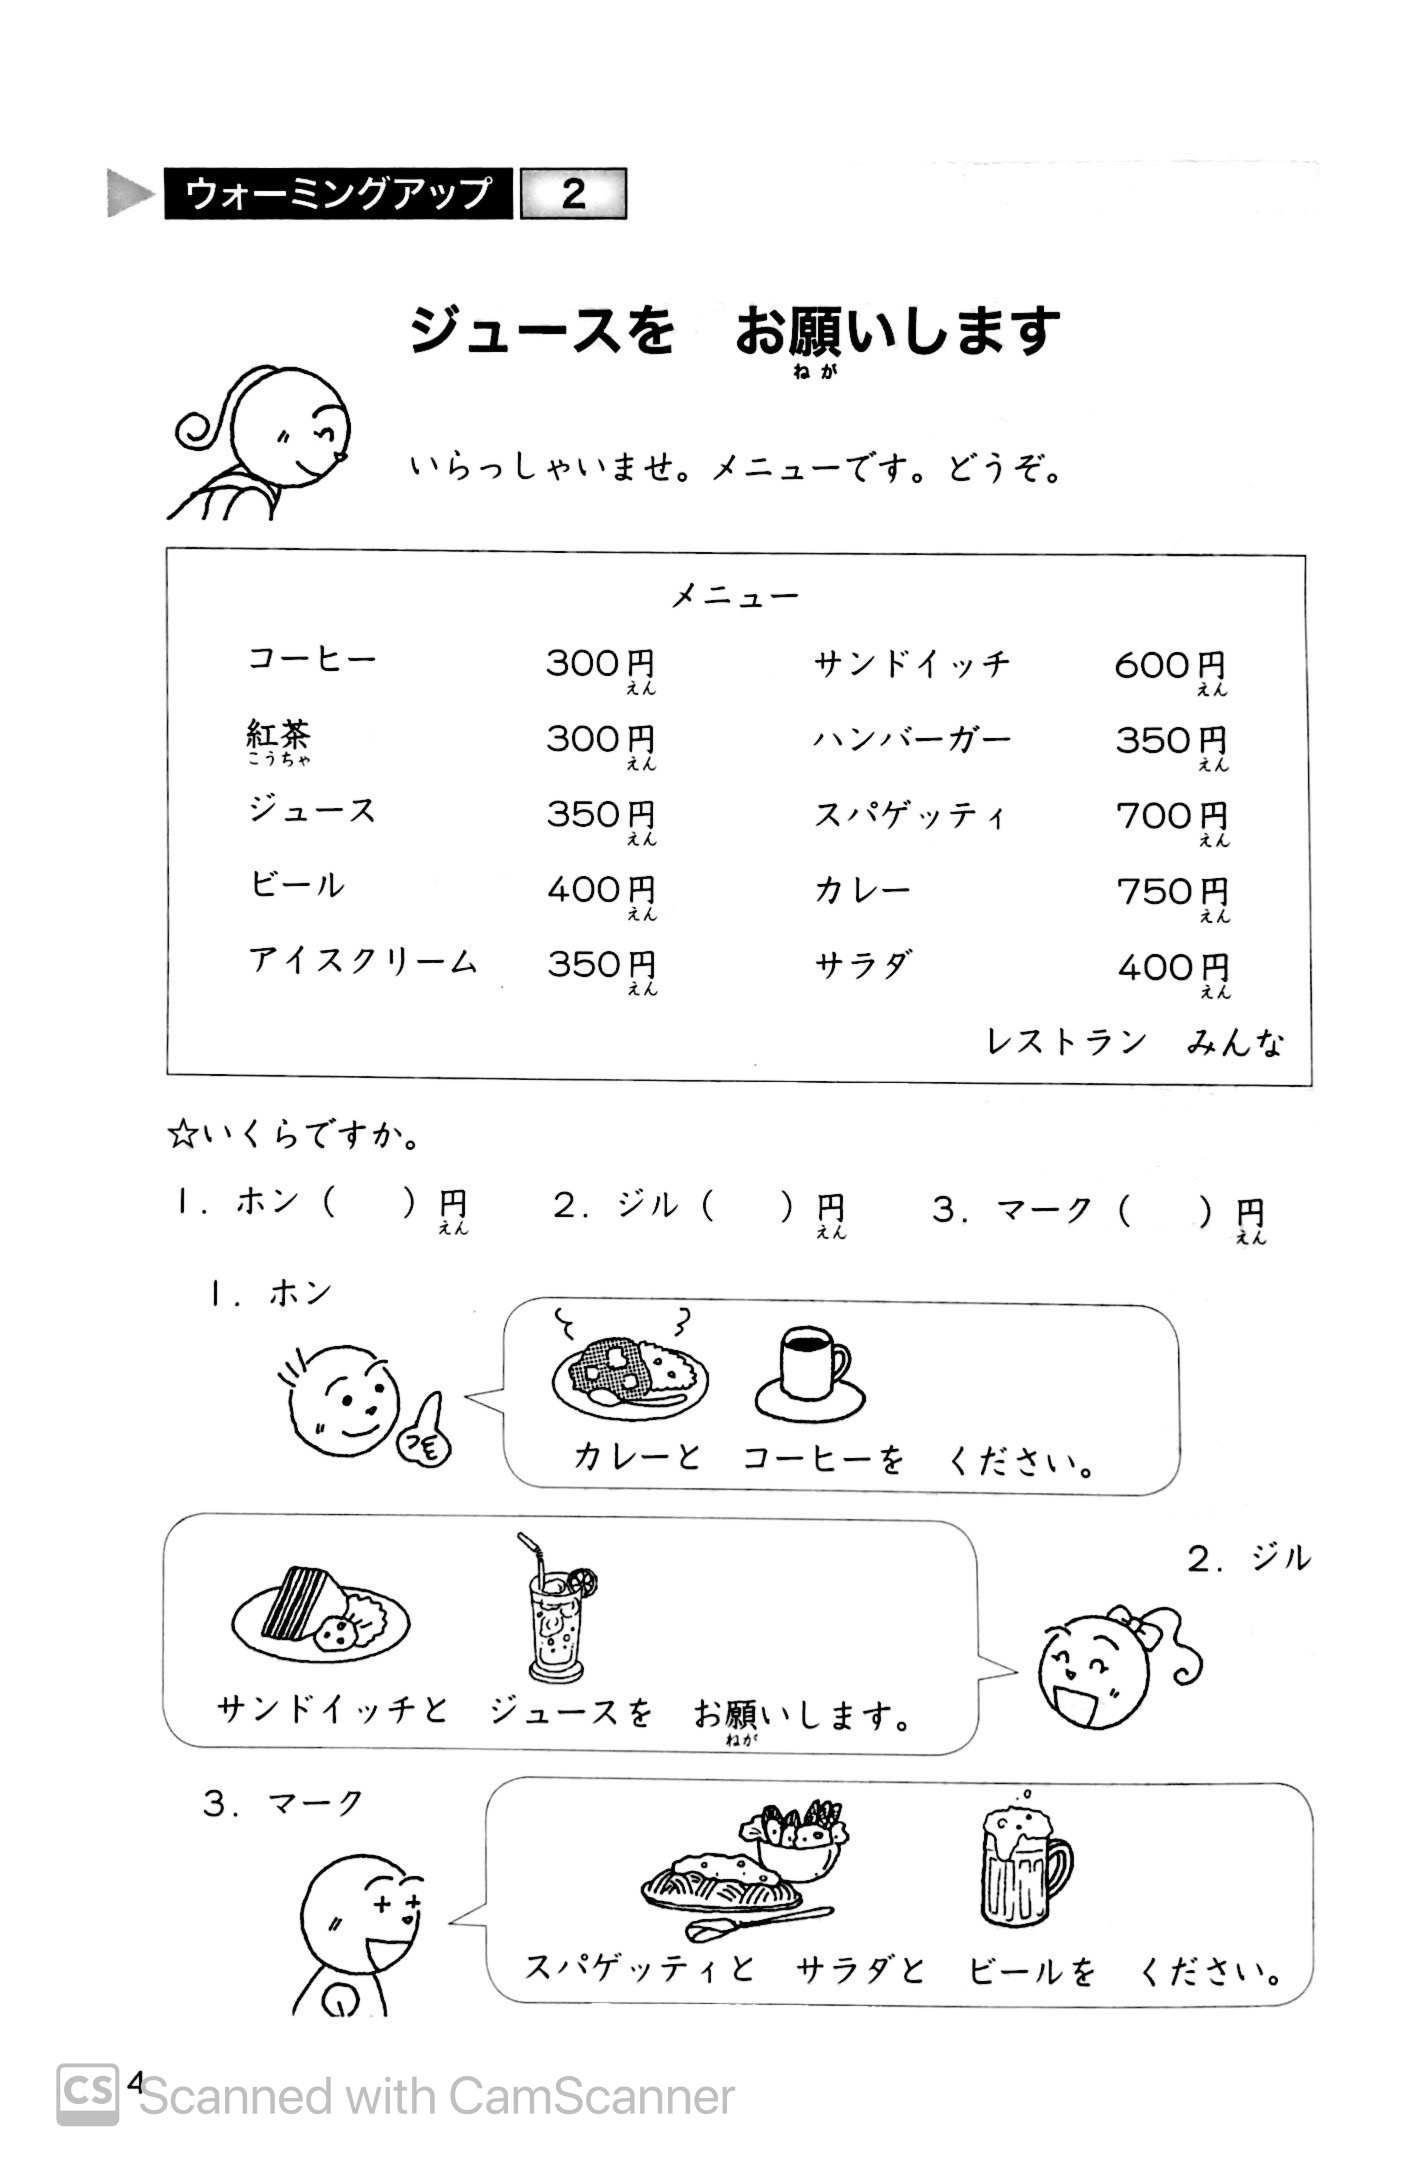 Tiếng Nhật Sơ Cấp 1: 25 Bài Đọc Hiểu Trình Độ Sơ Cấp PDF